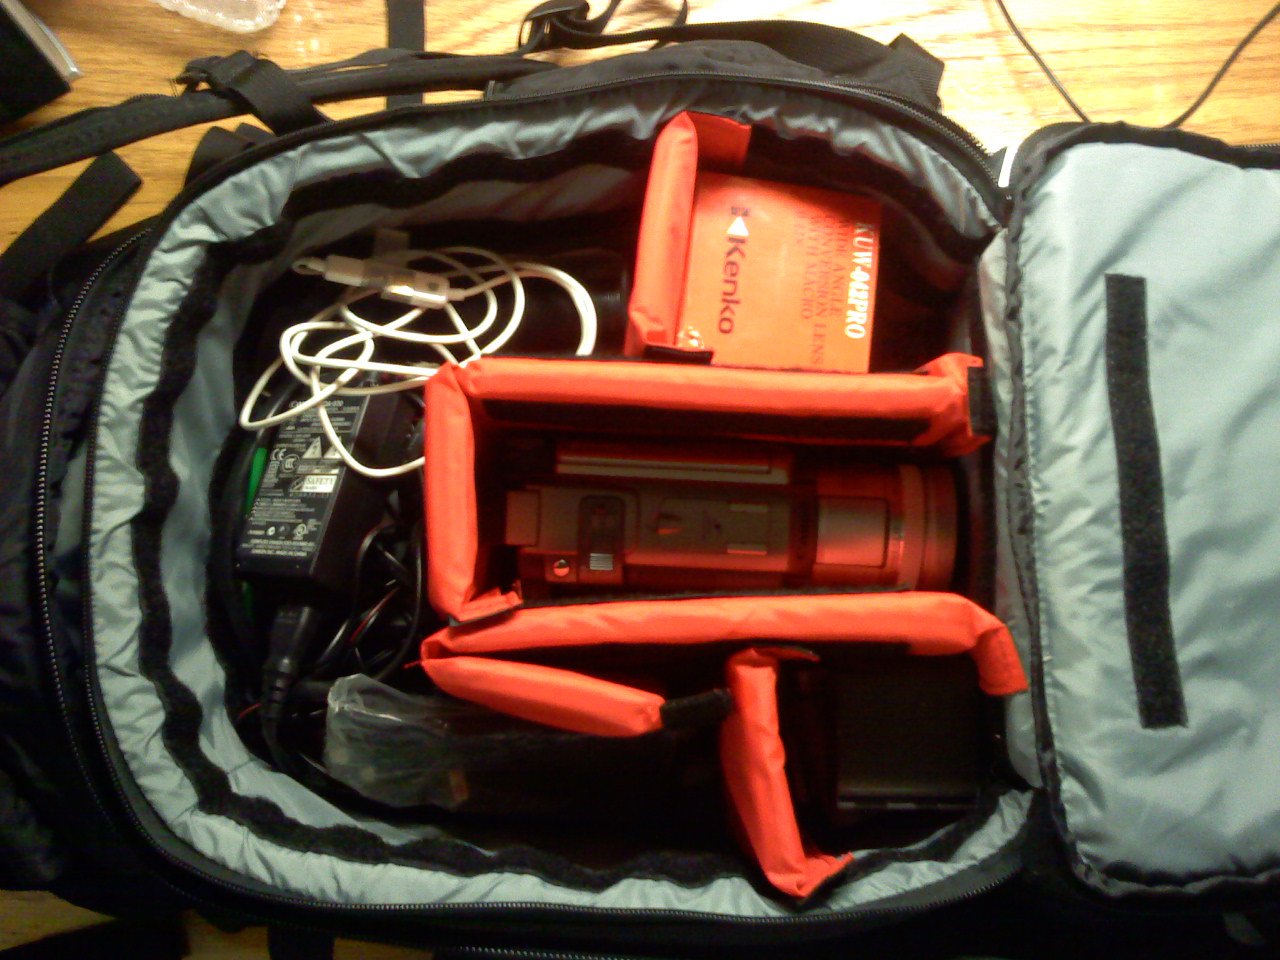 Camera bag block, in backpack